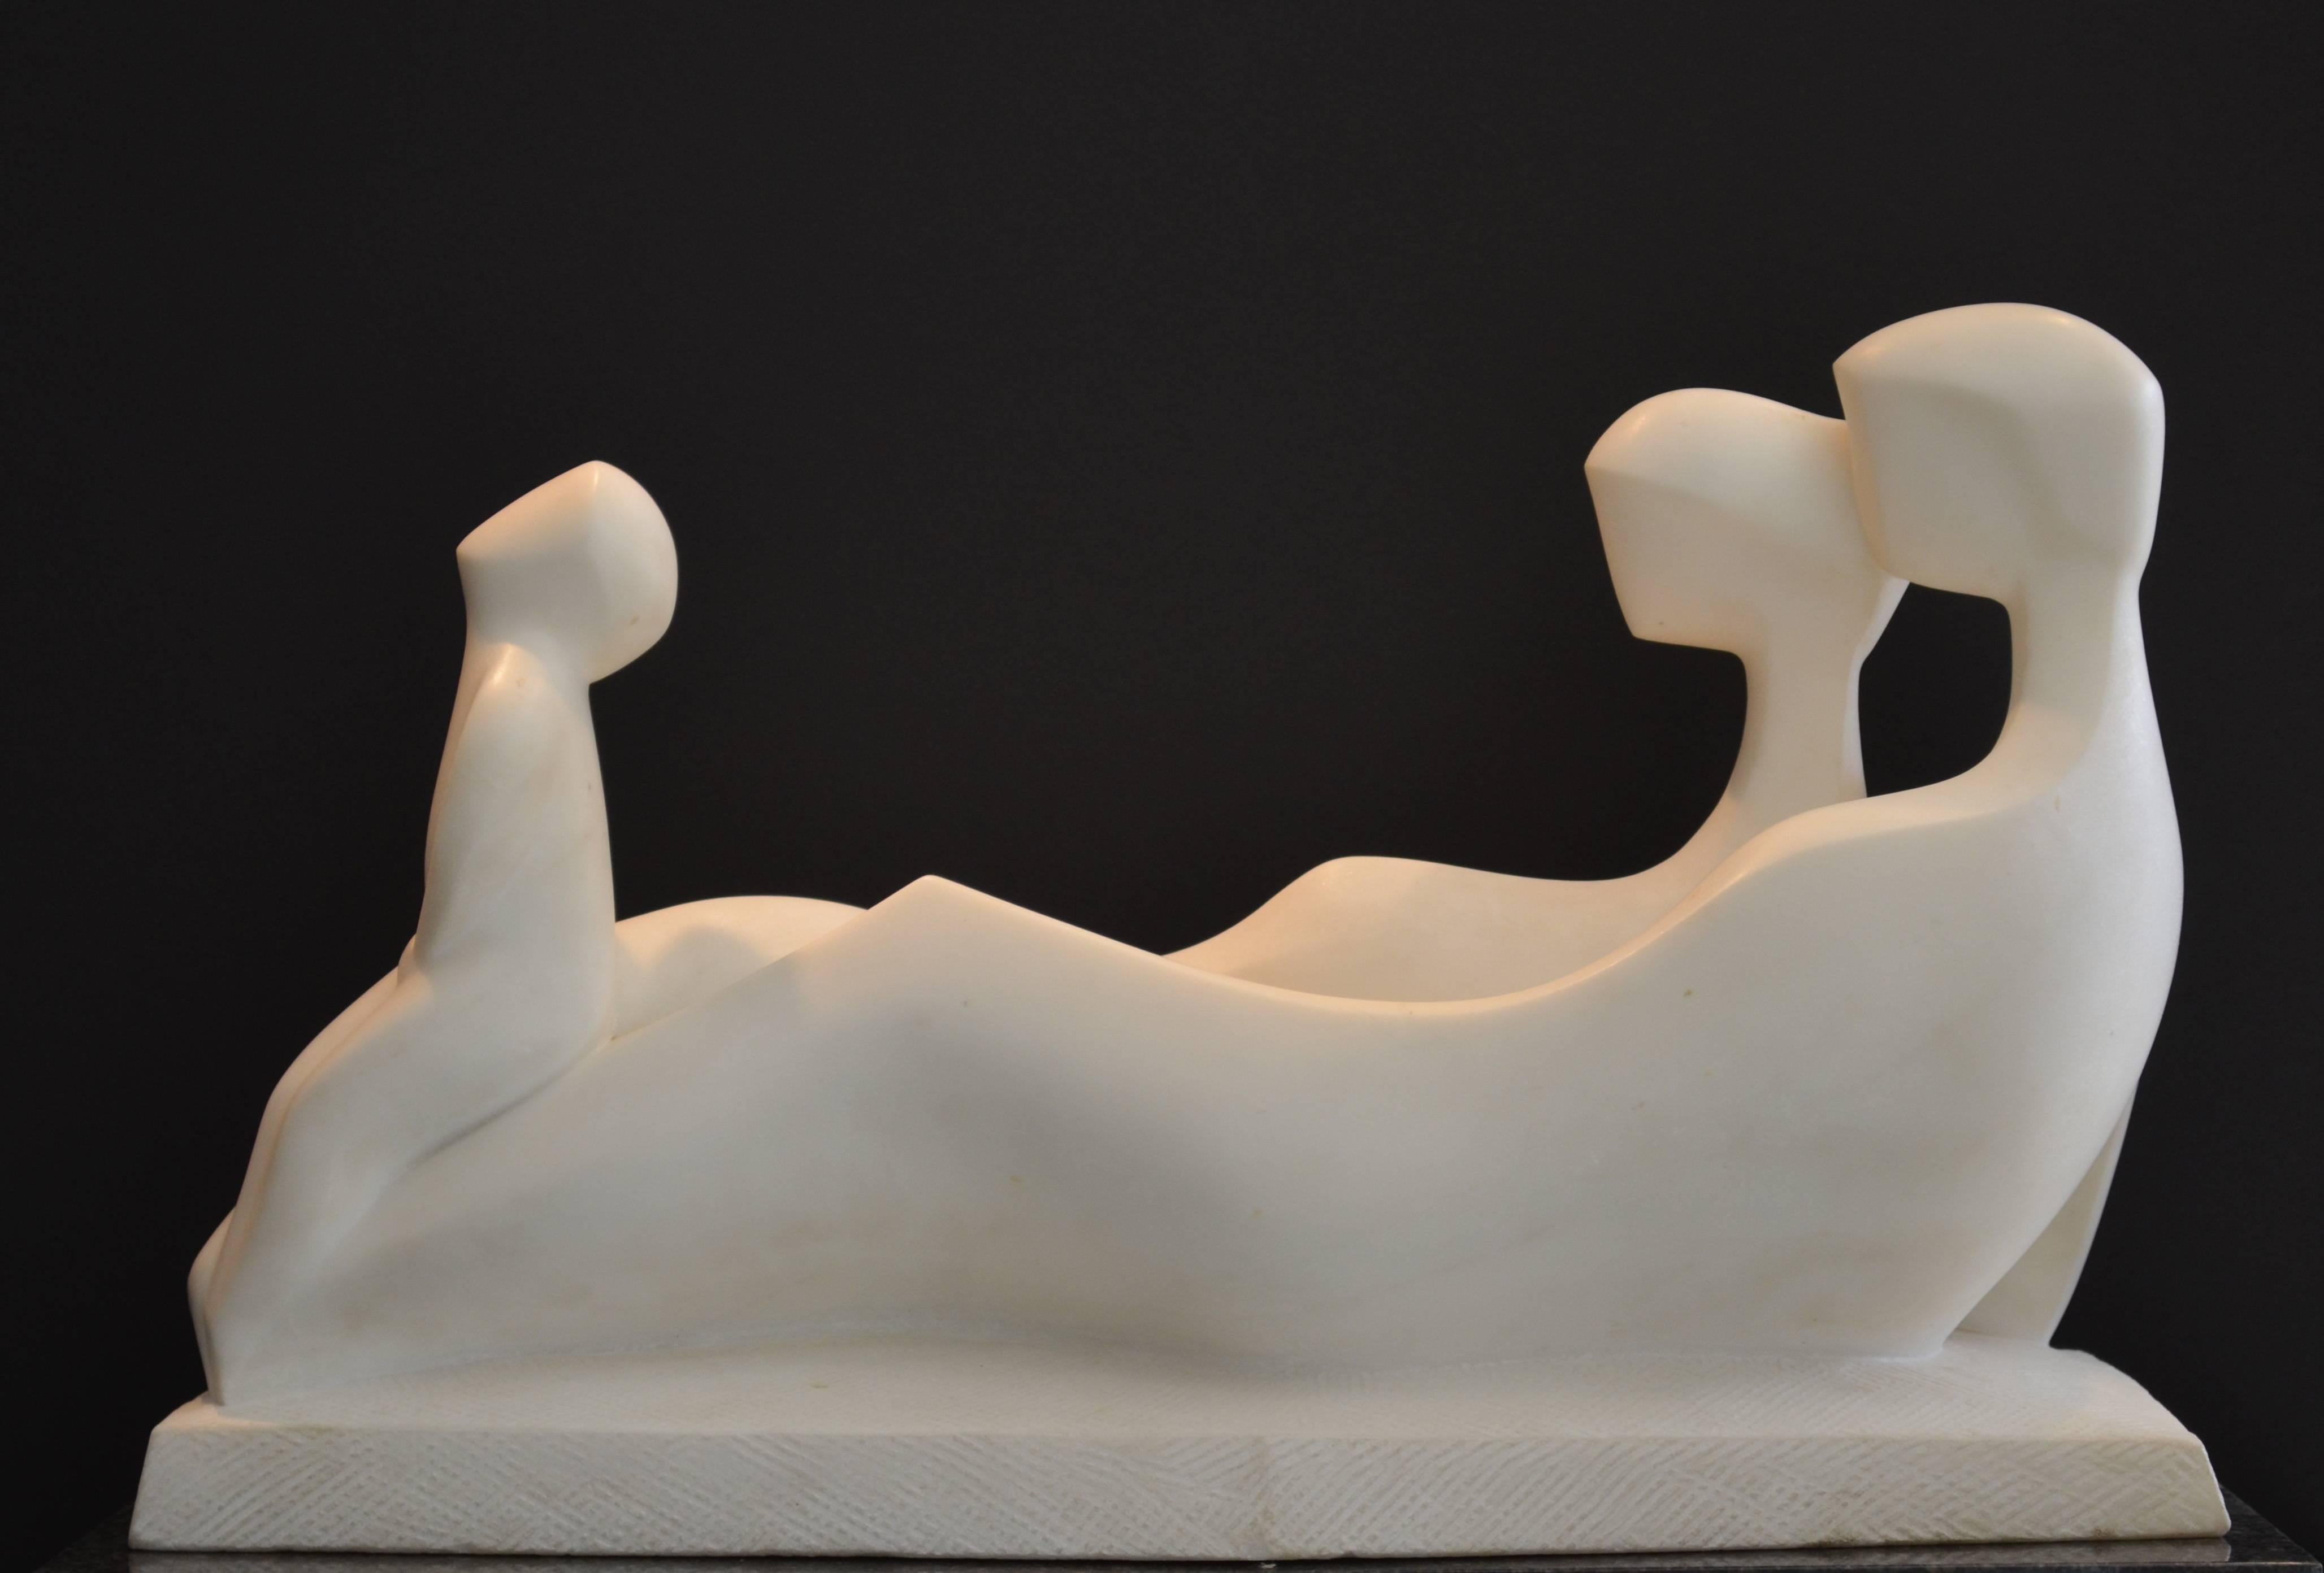 Emergence - Sculpture by Robert Russin